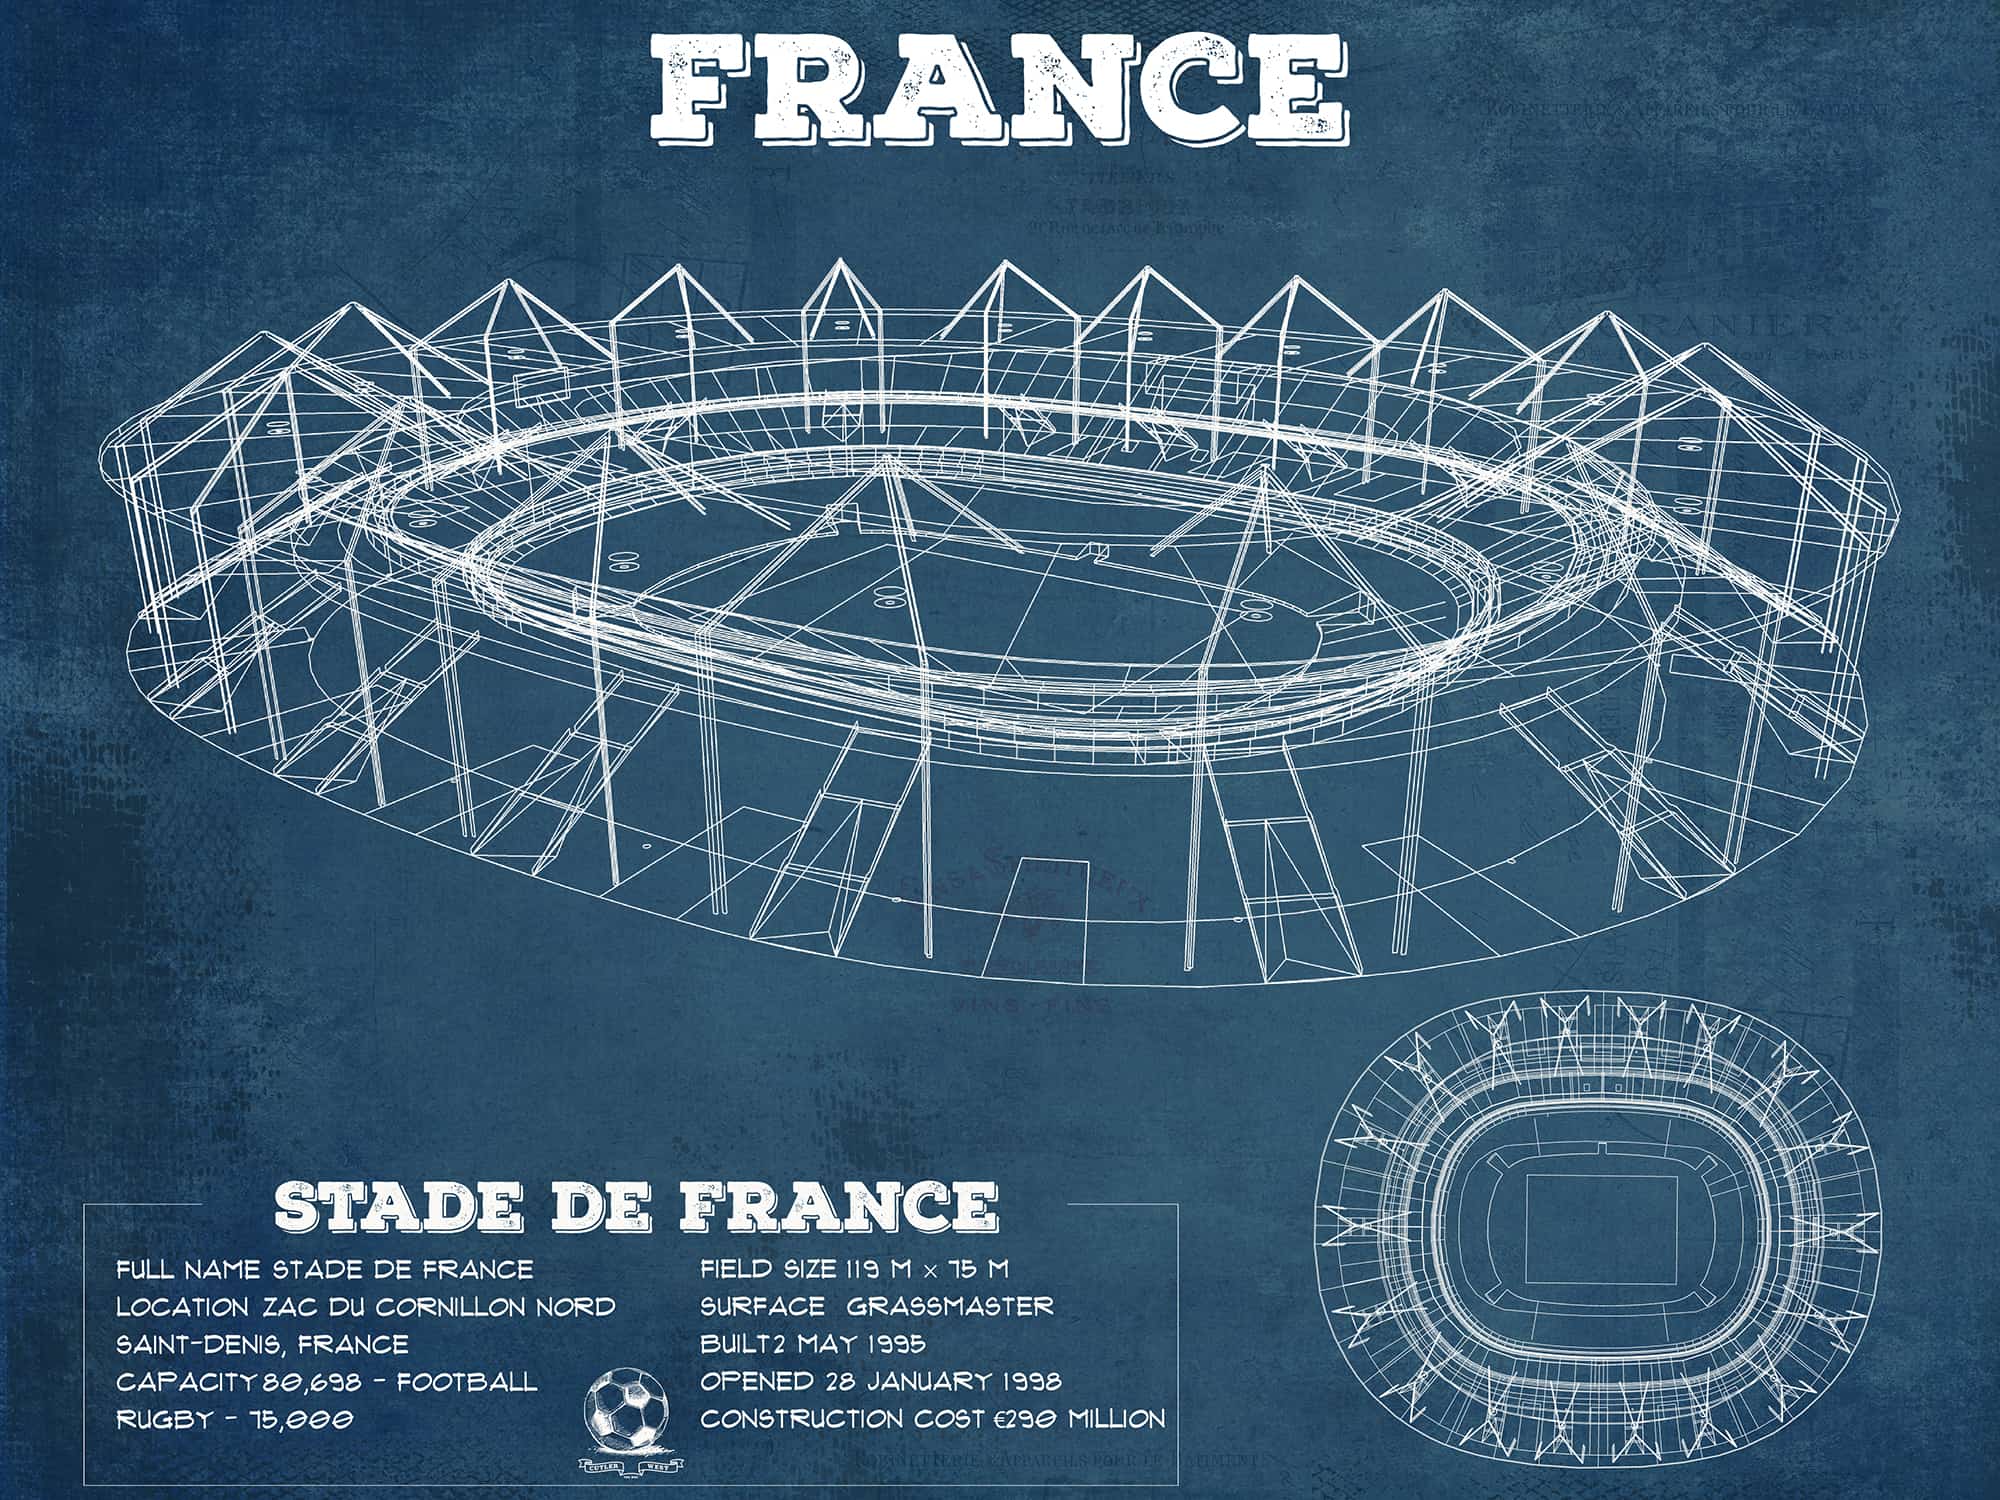 Cutler West Stade de France Vintage Soccer Stadium Print